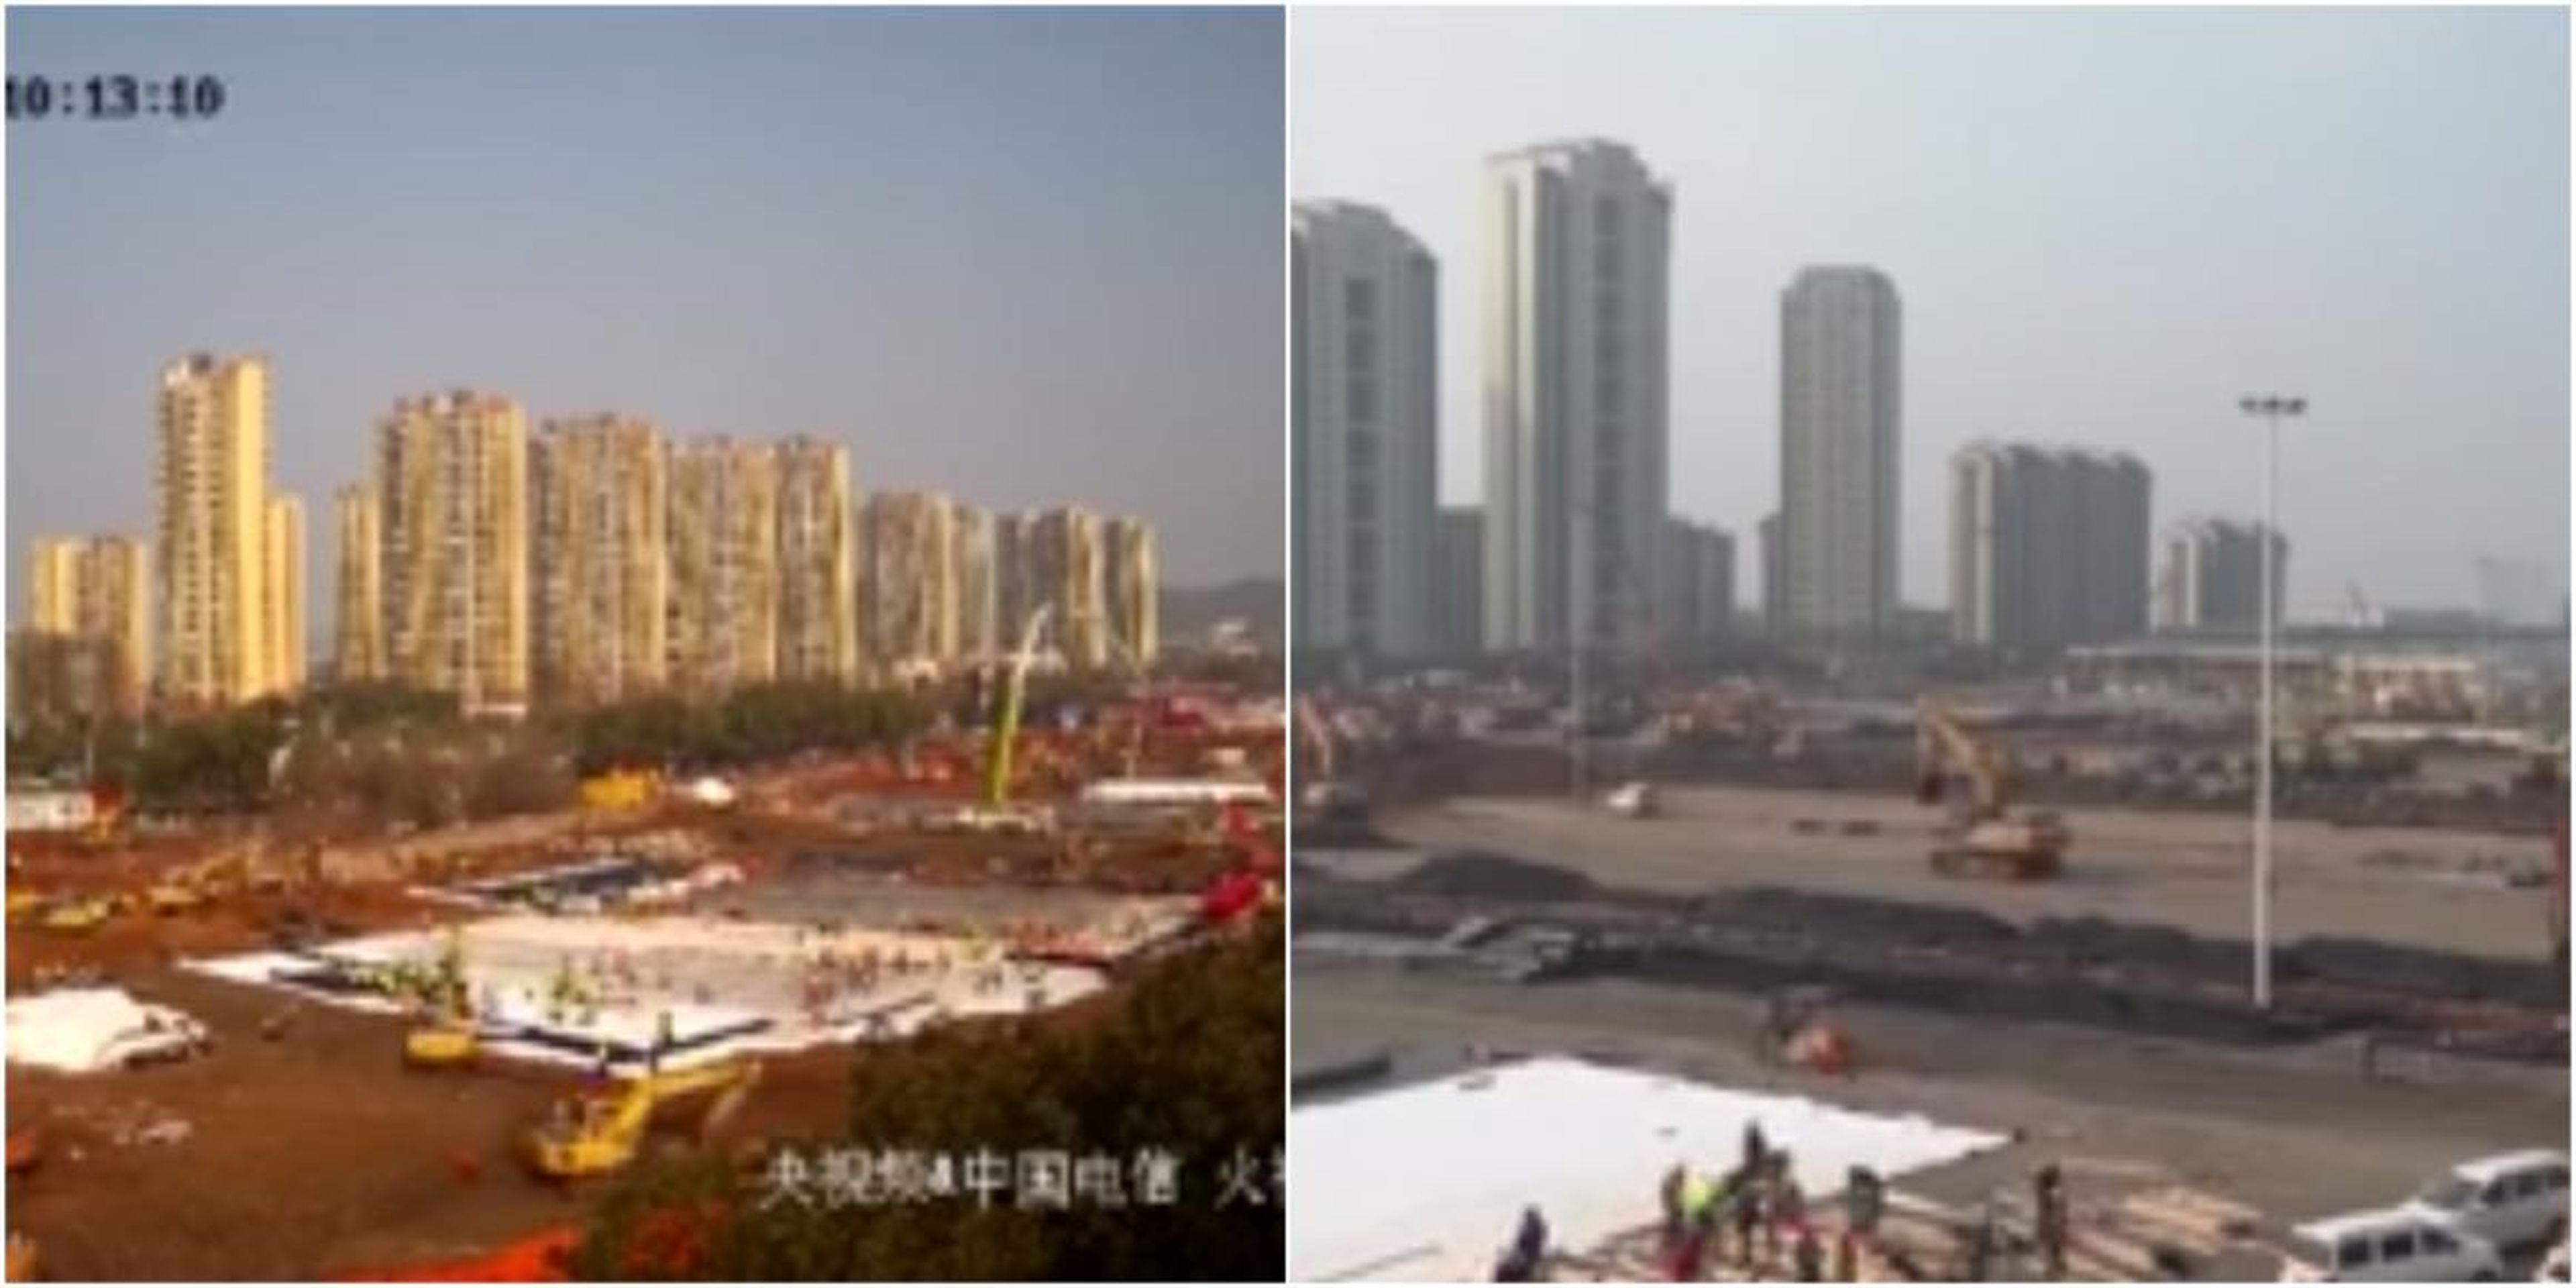 Las imágenes muestran los trabajos de construcción de los dos nuevos hospitales de la ciudad de Wuhan.